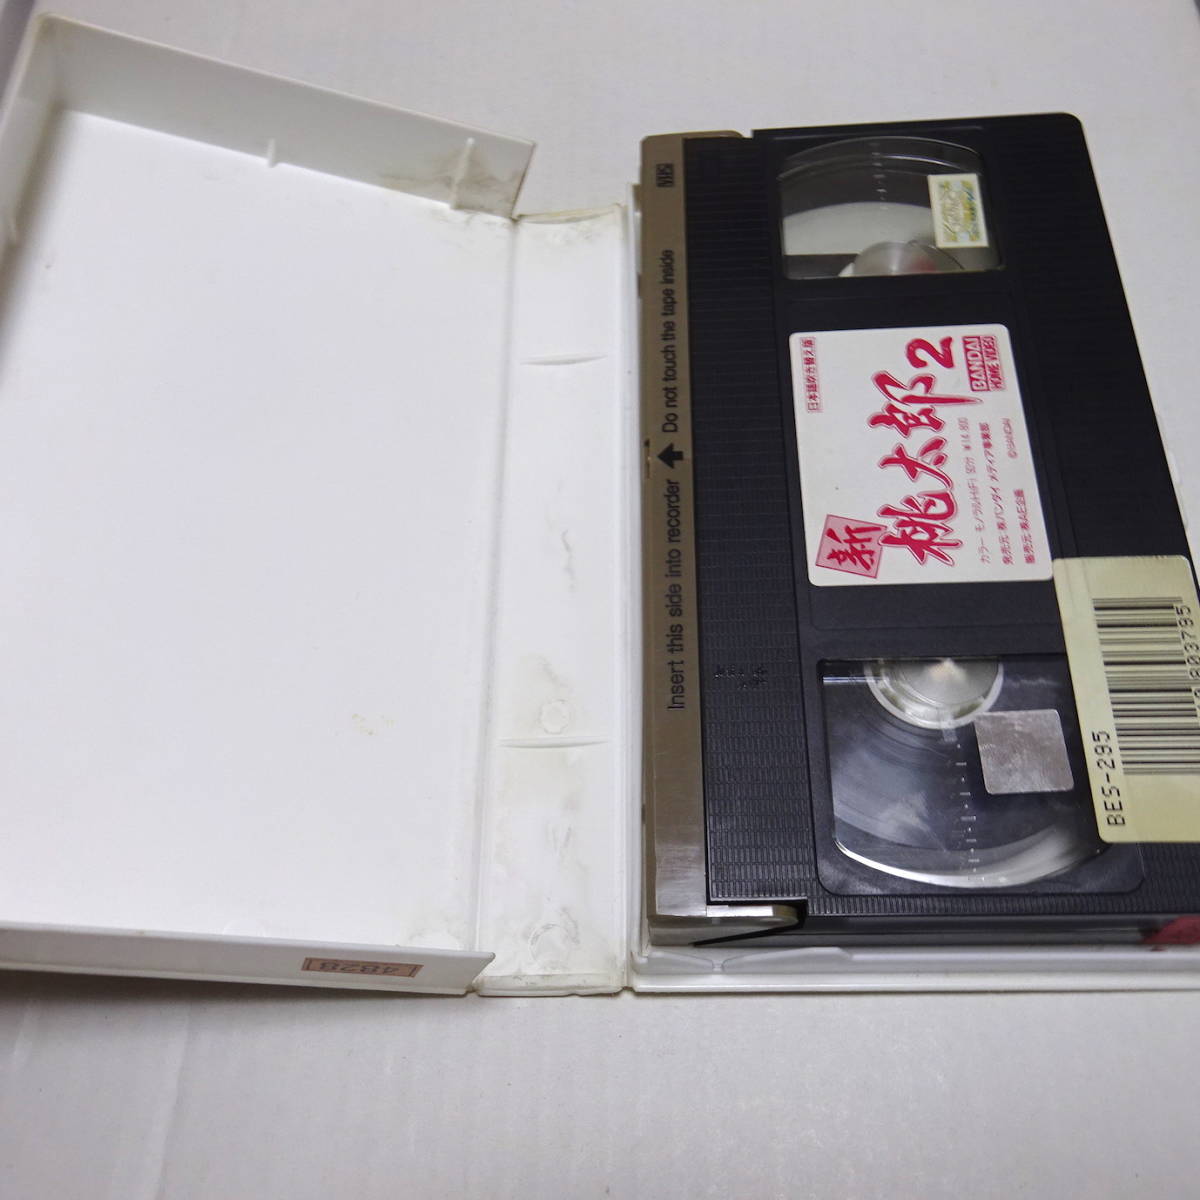  редкий /VHS видео / не DVD/ в аренду выше [ новый персик Taro 2 японский язык дуть . изменение версия ]1988 год / постановка :. средний ./. маленький .( Lynn * автомобиль o low )